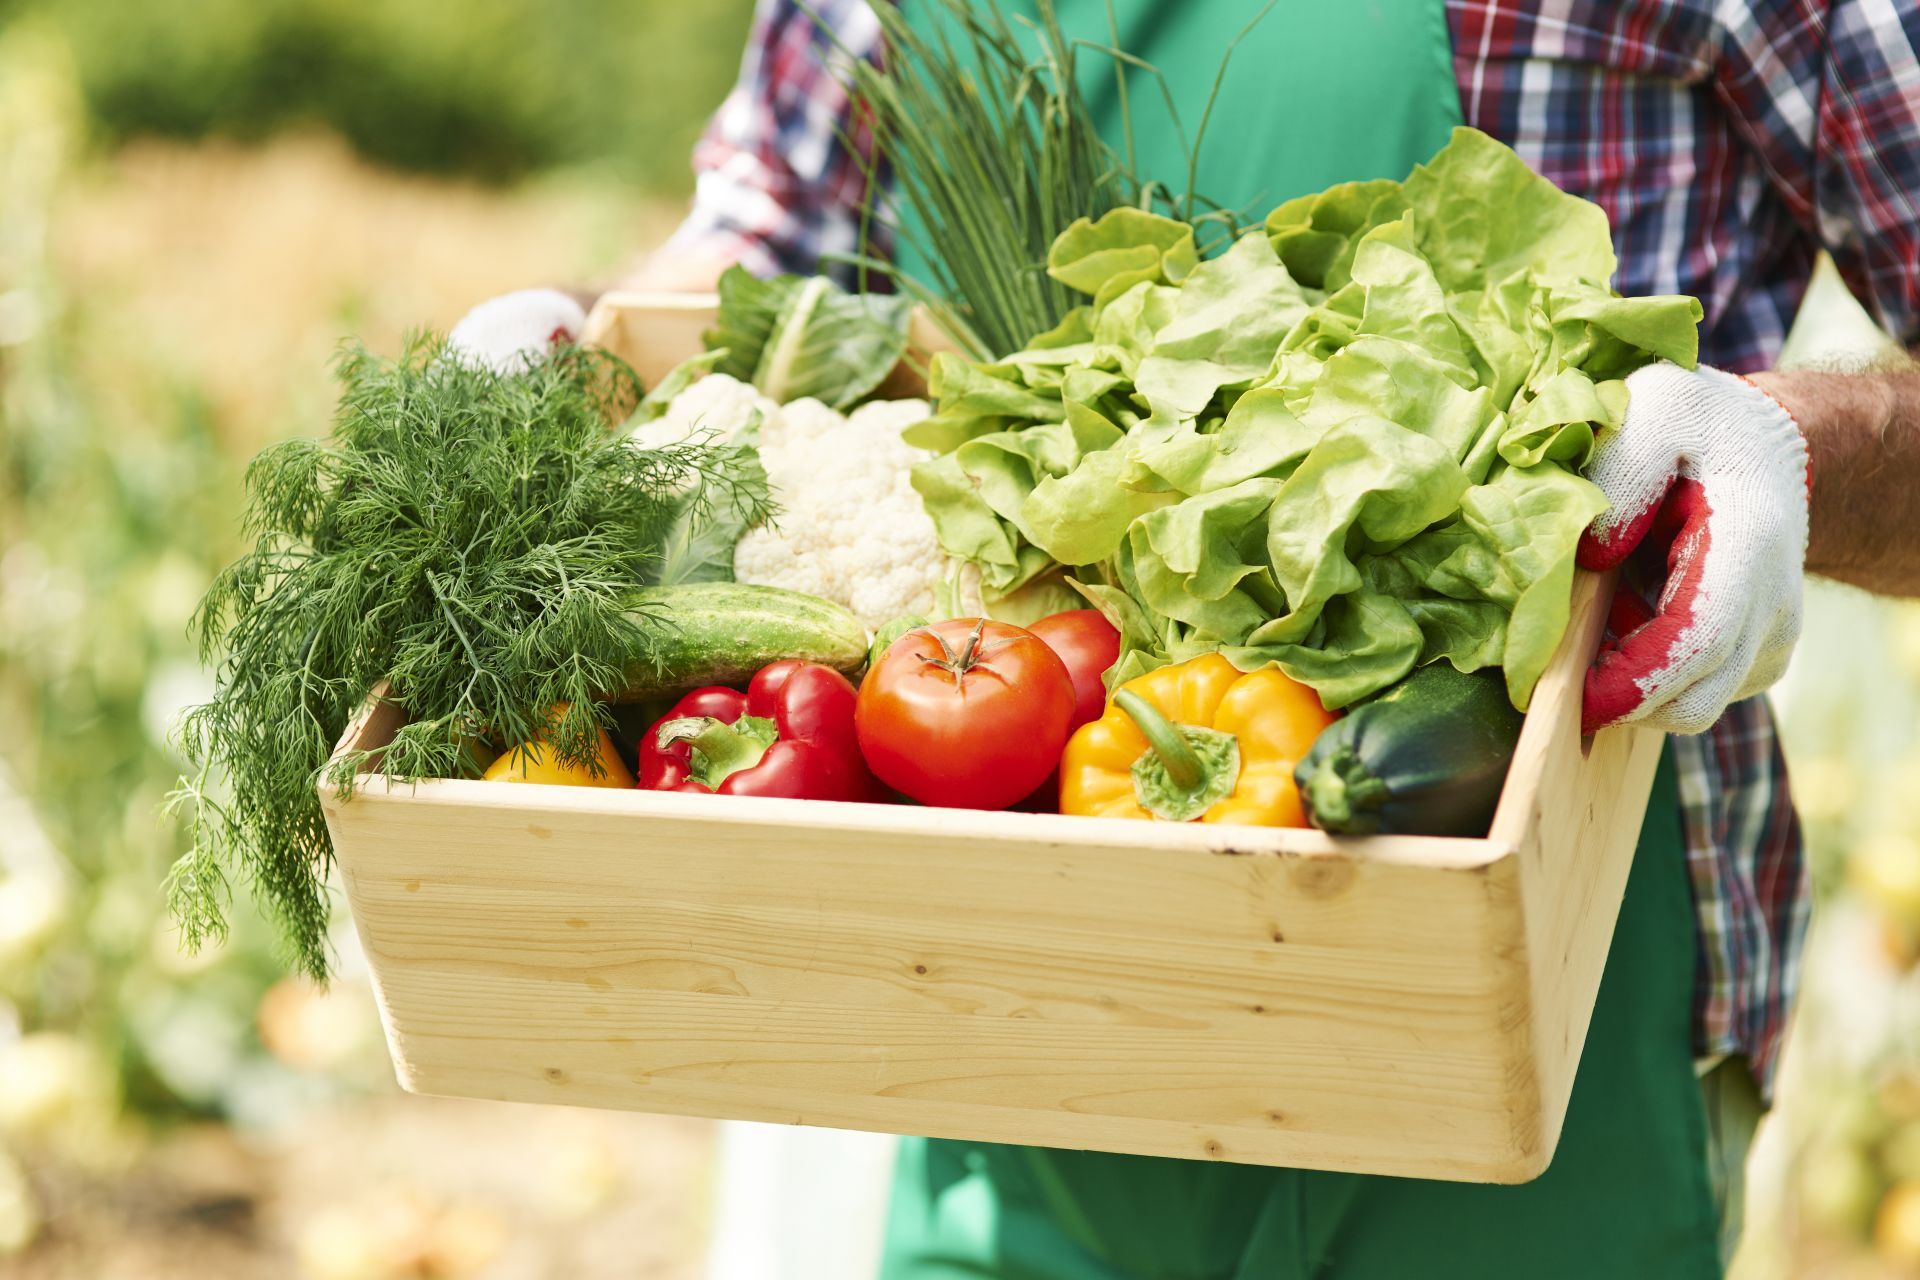 Caja frutas y verduras frescas - Grande